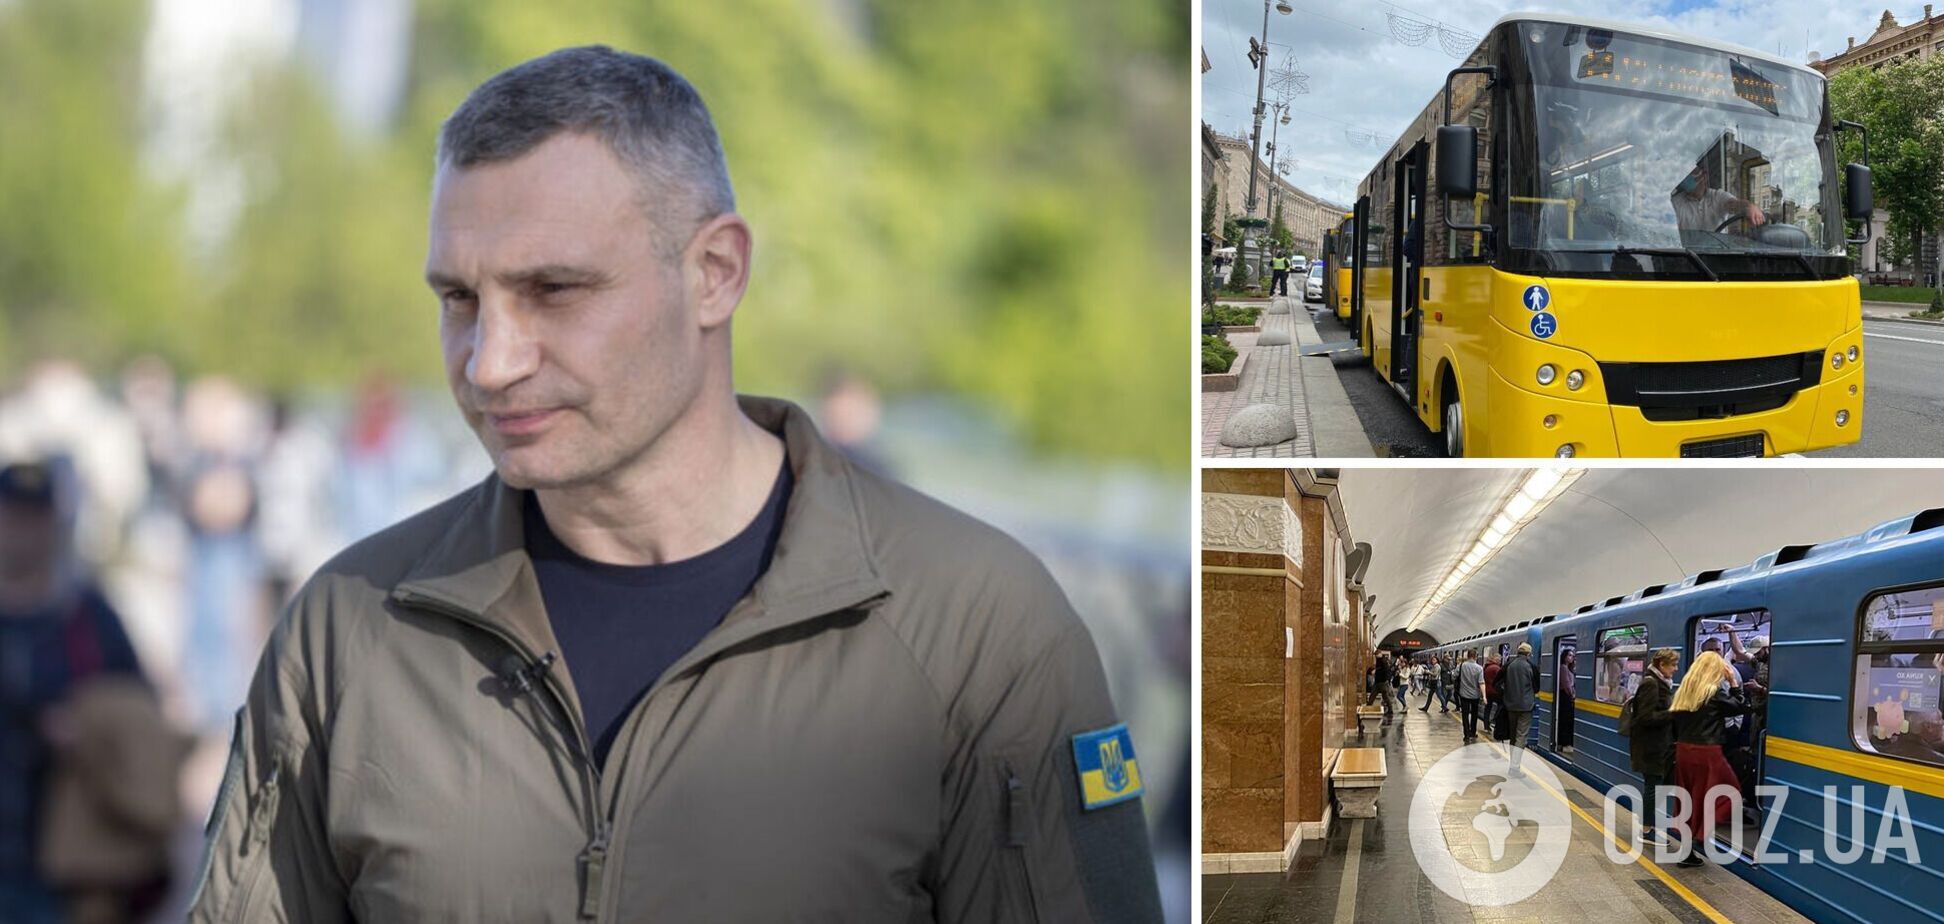 Кличко: в Киеве не будут повышать цену на проезд в транспорте, пока идет война